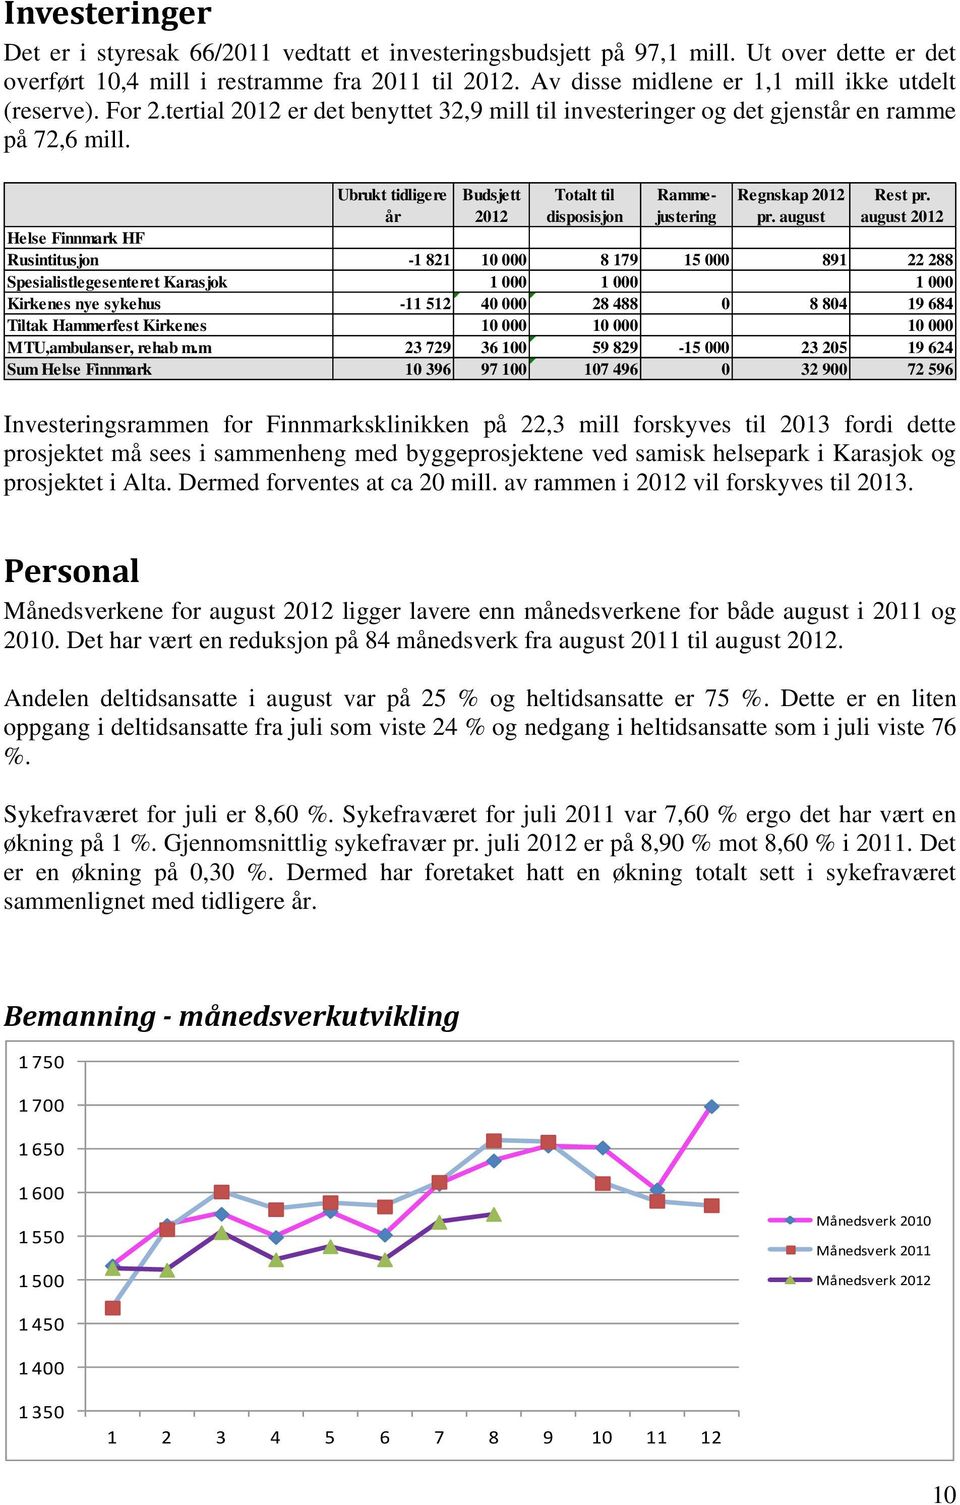 Ubrukt tidligere år Budsjett 2012 Totalt til disposisjon Rammejustering Regnskap 2012 pr. august Rest pr.